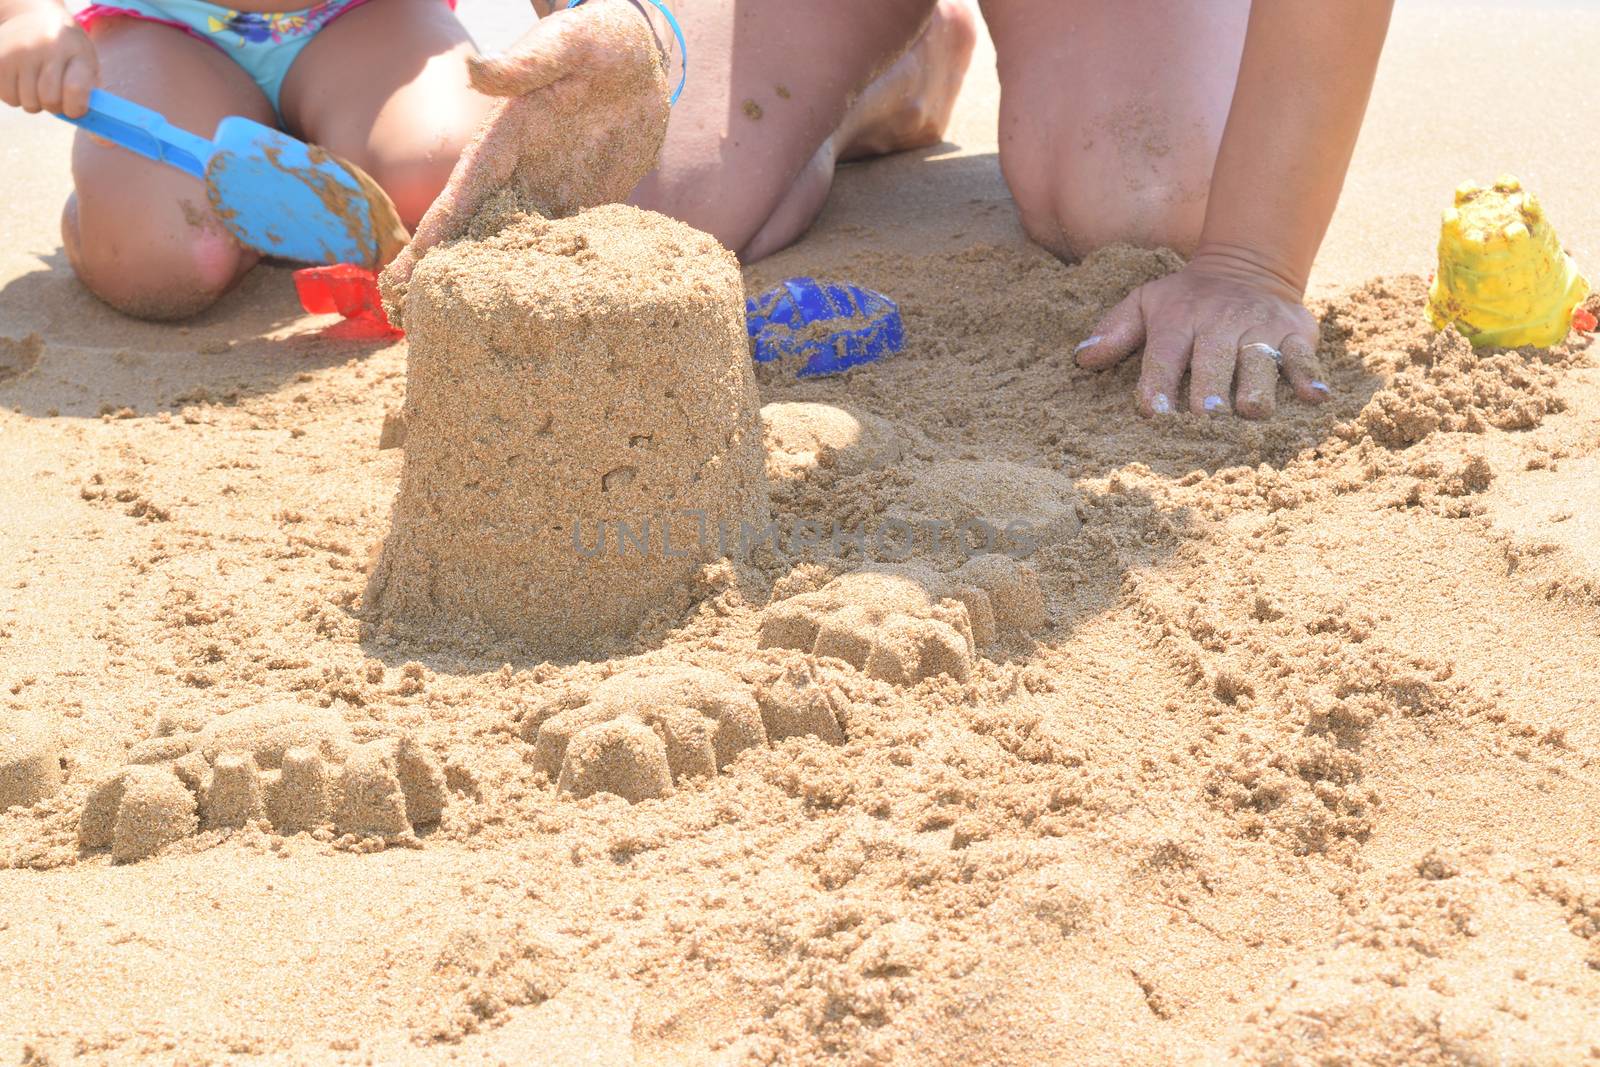 building a sand castle on the beach